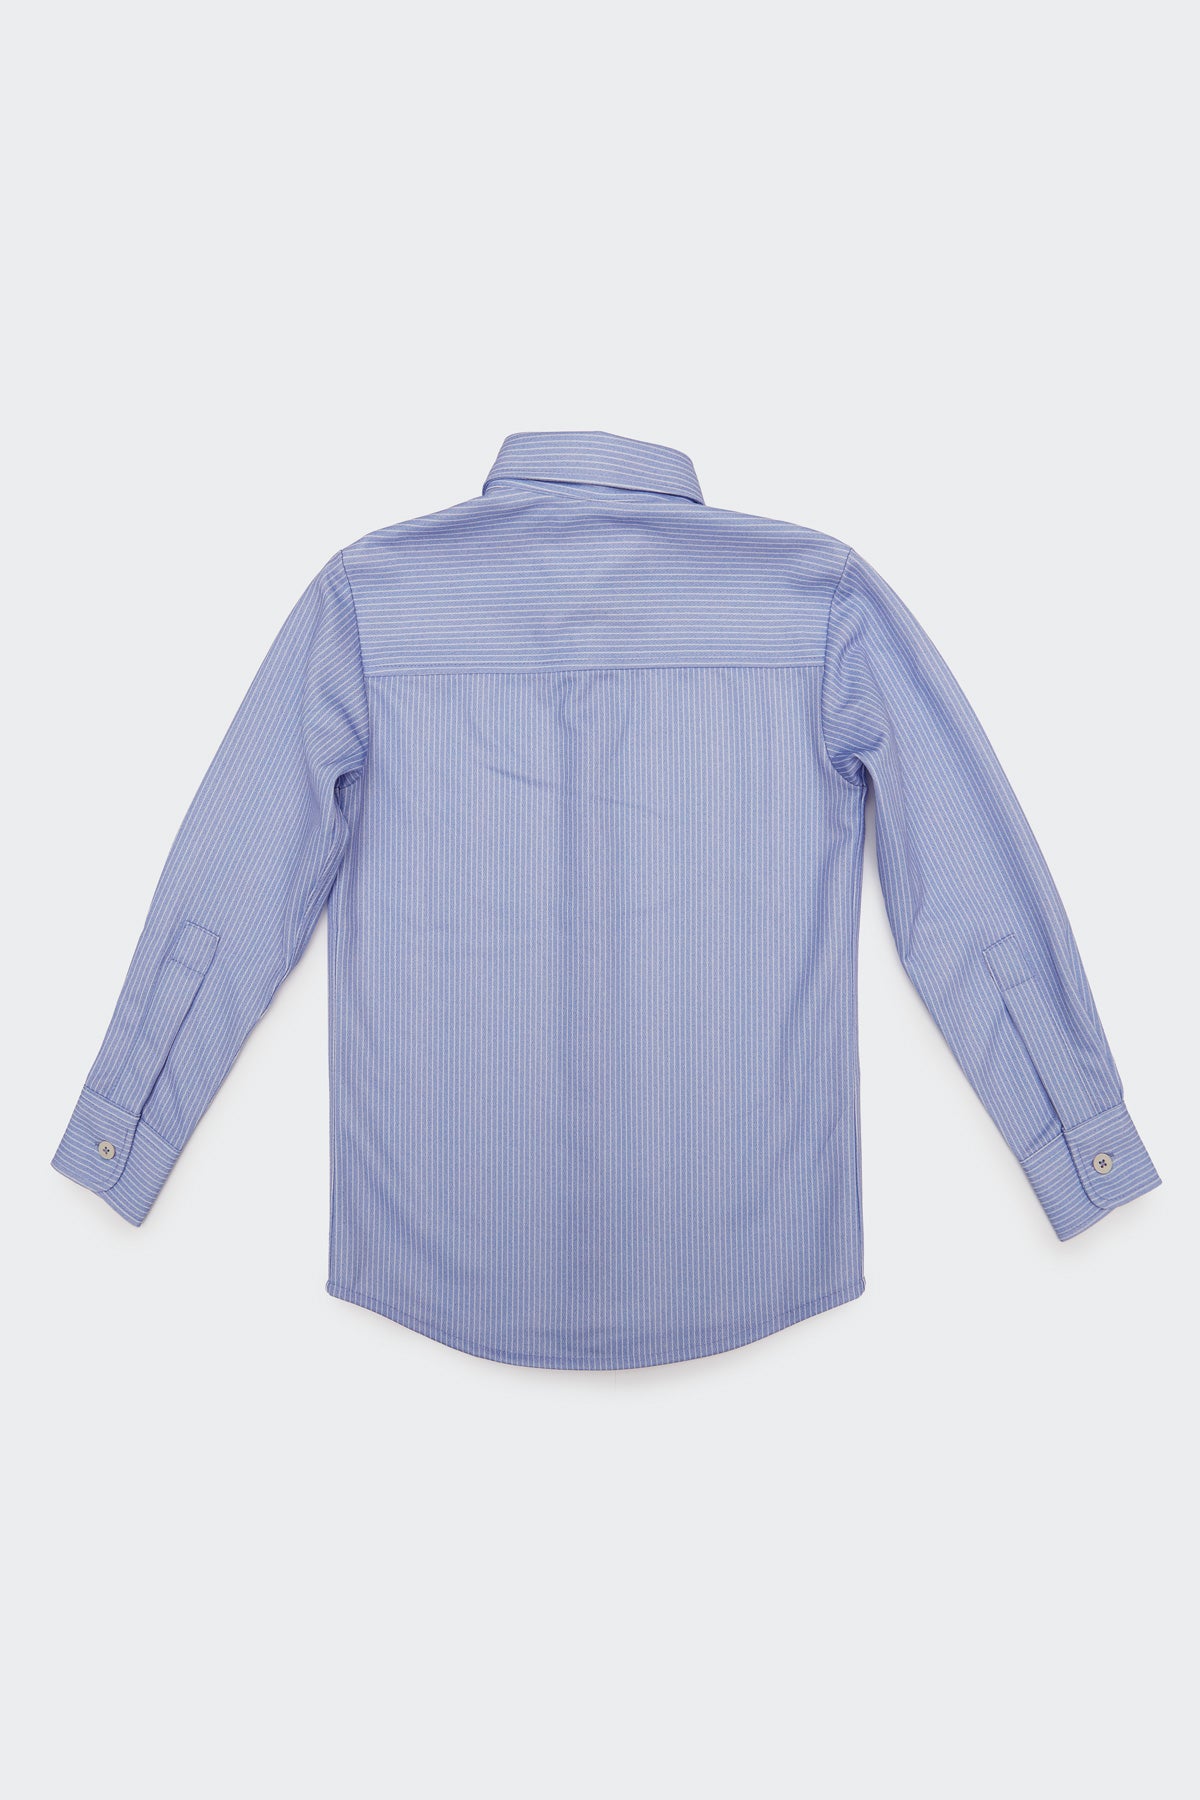 Camisa de niño azul de rayas - Sepiia